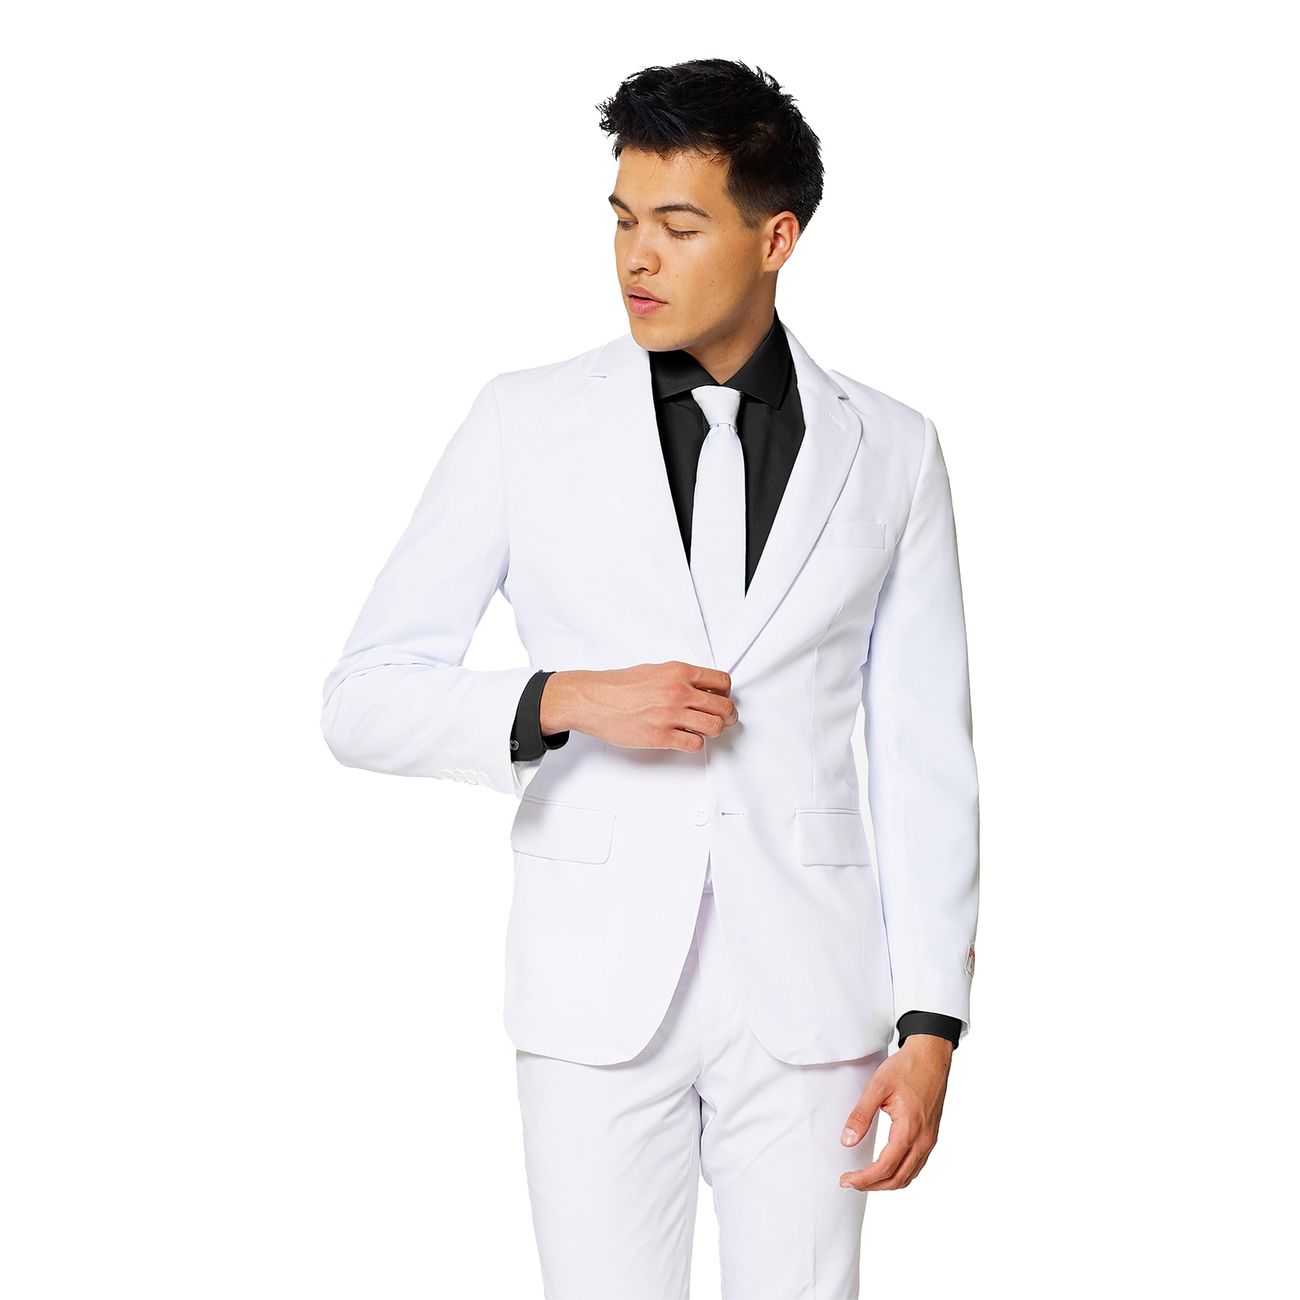 opposuits-white-knight-kostym-31871-6